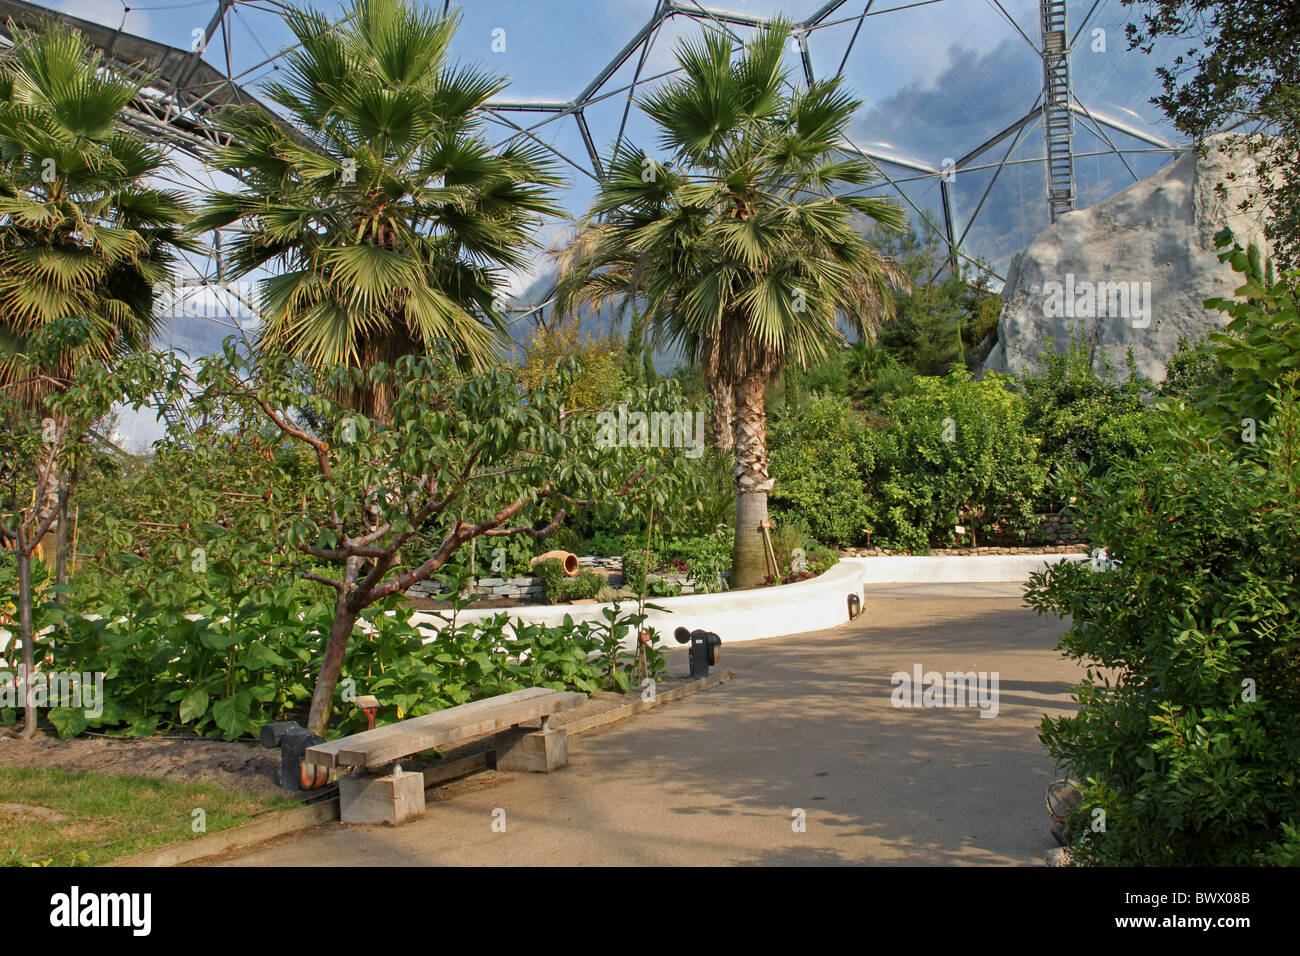 Palmiers méditerranéens biome méditerranéen Banque D'Images